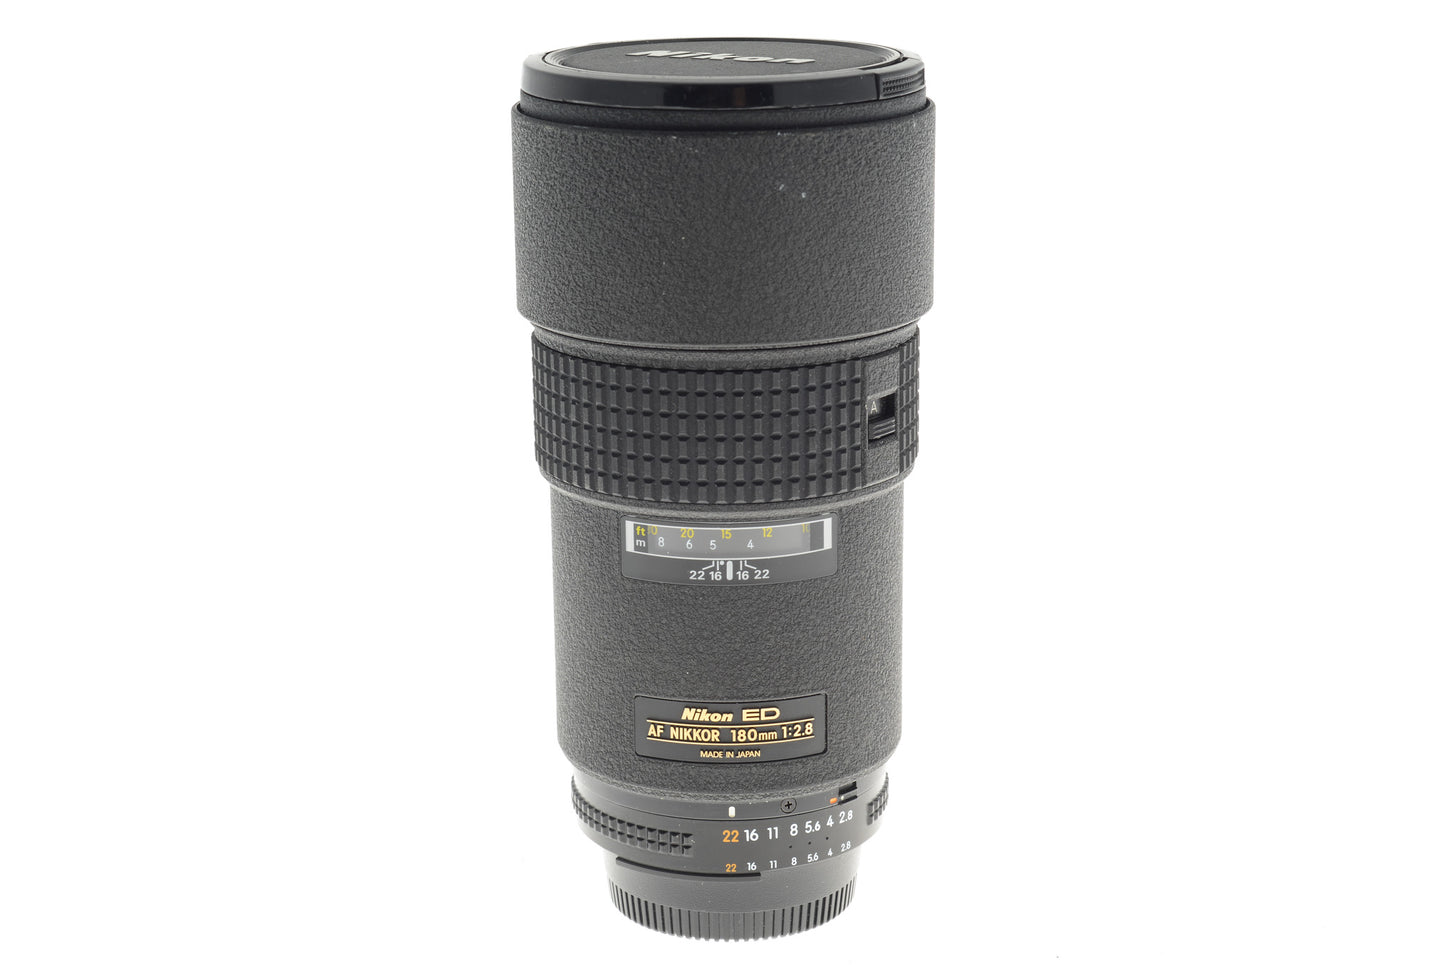 Nikon 180mm f2.8 IF ED AF Nikkor (Mark II) - Lens